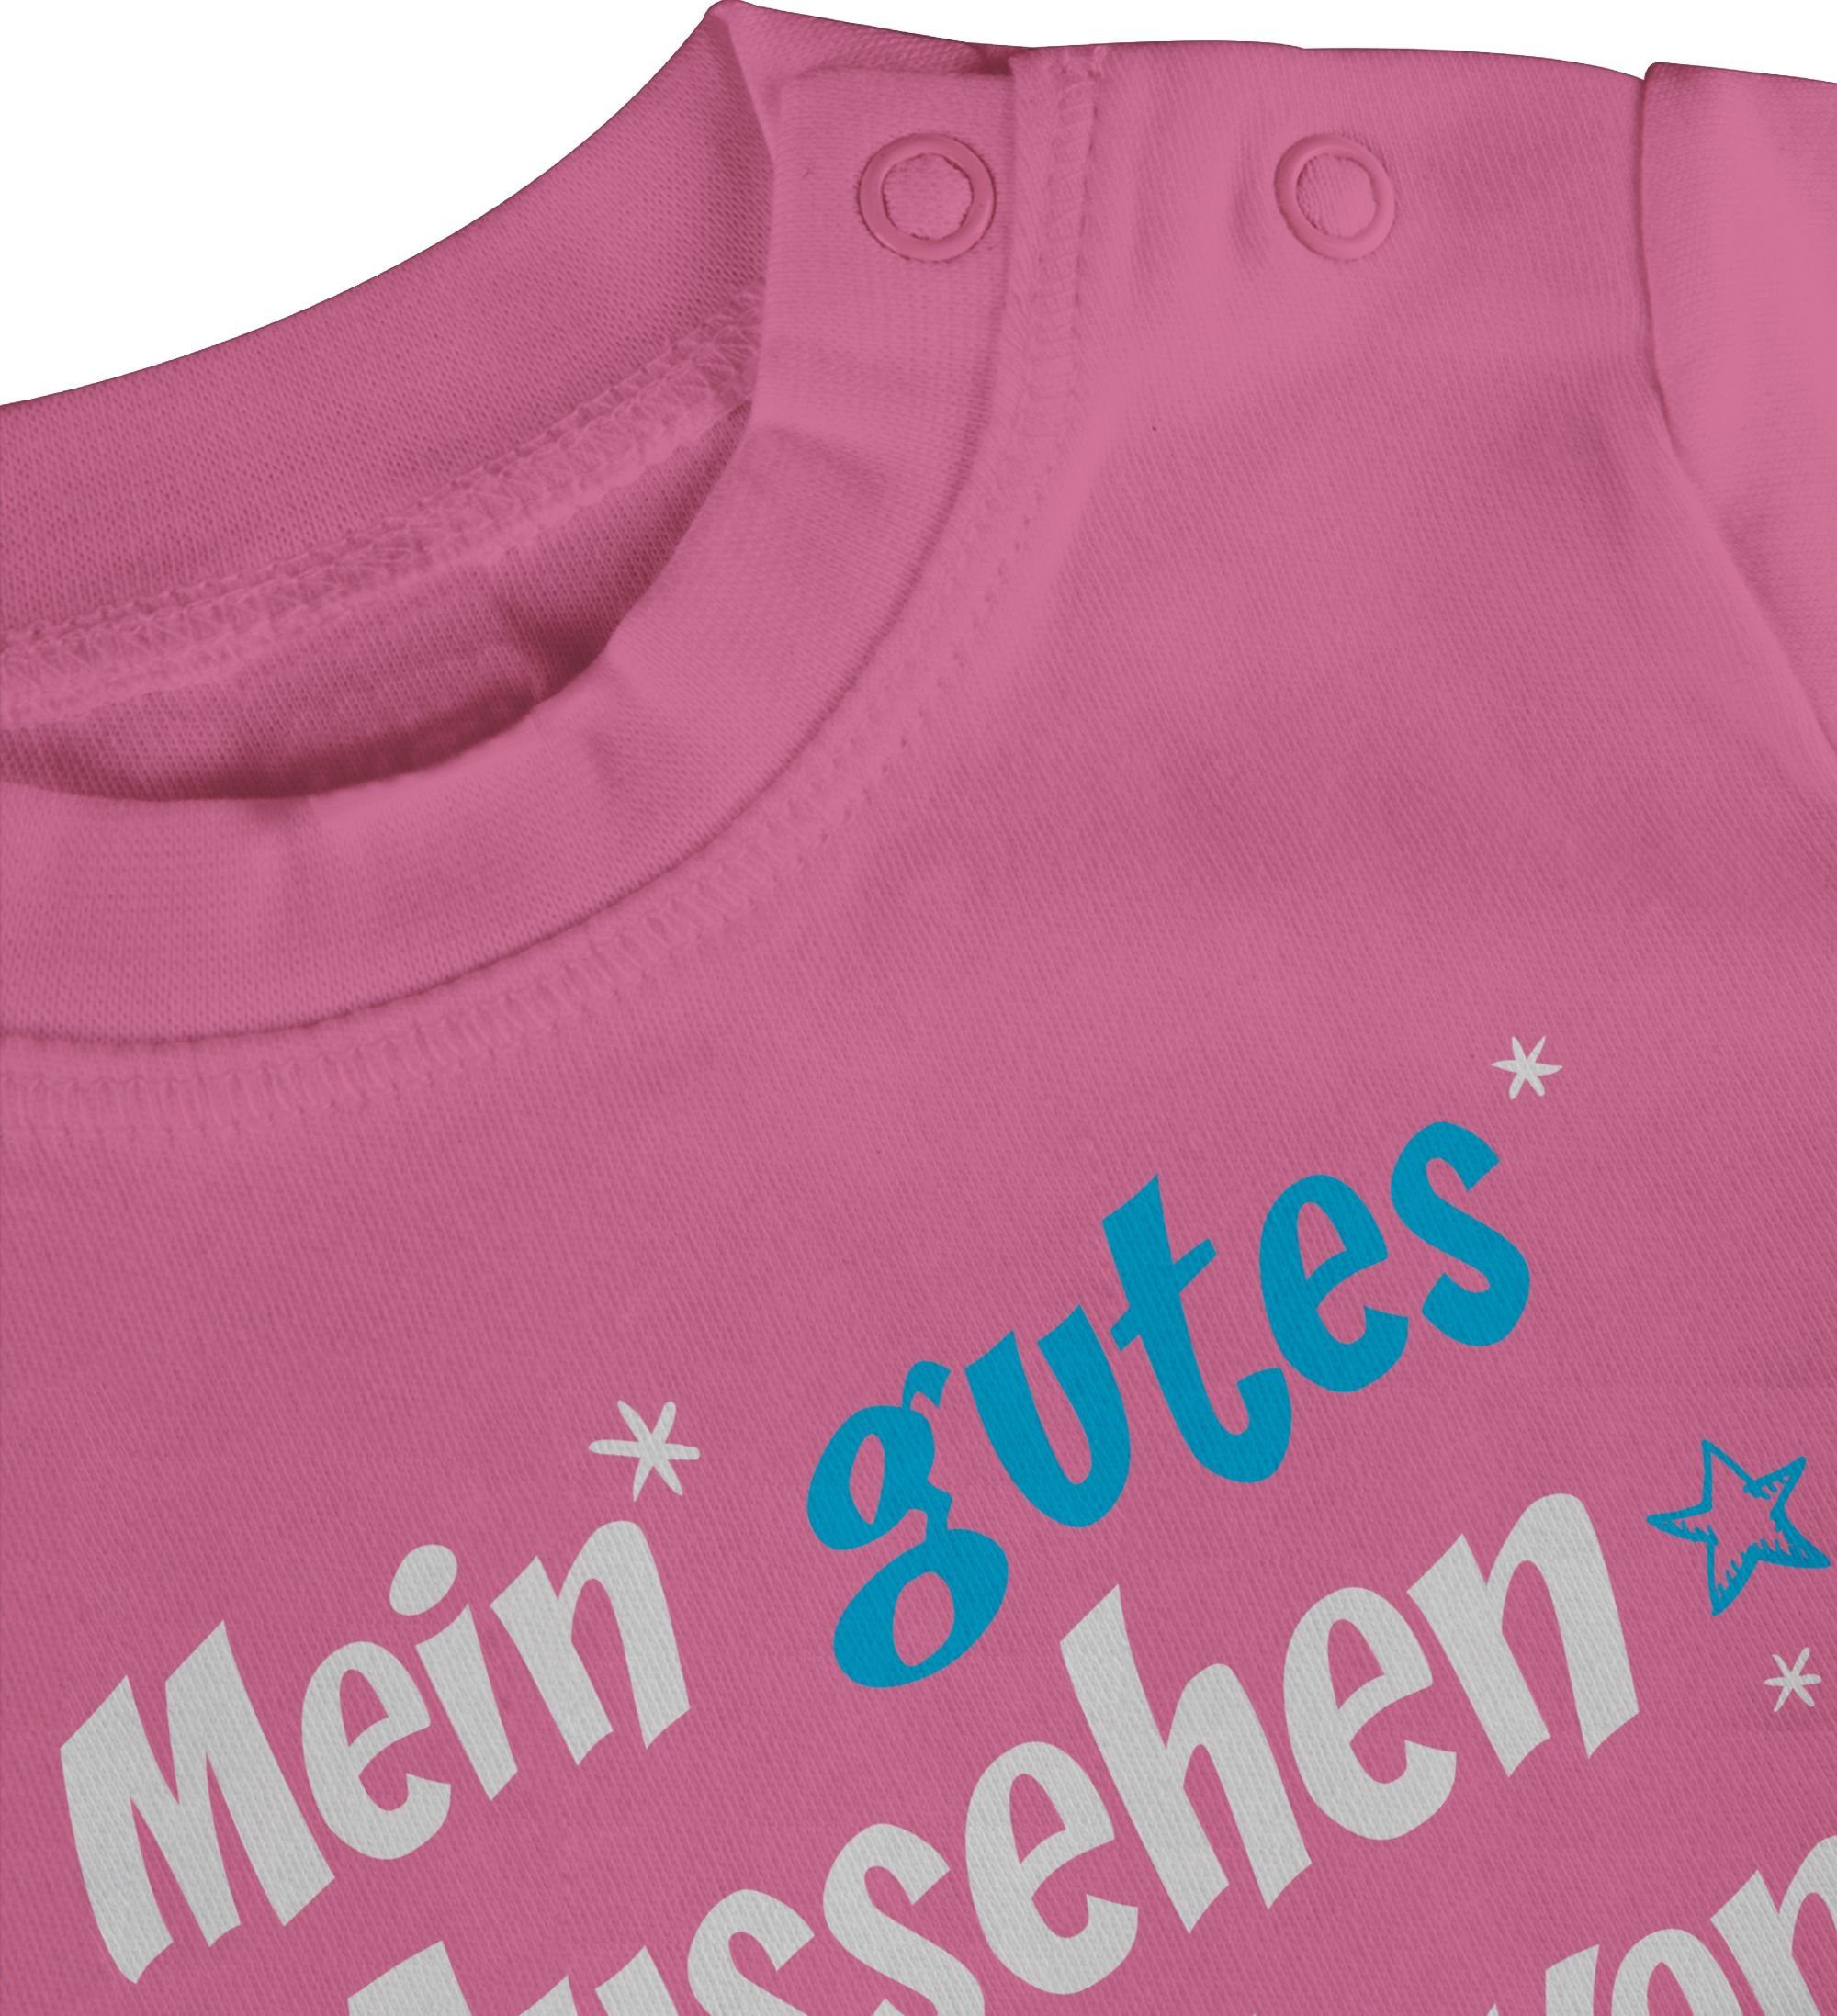 habe Spruch Aussehen Mein meinem T-Shirt Baby 2 ich gutes Sprüche Pink von Onkel - Shirtracer ONKEL